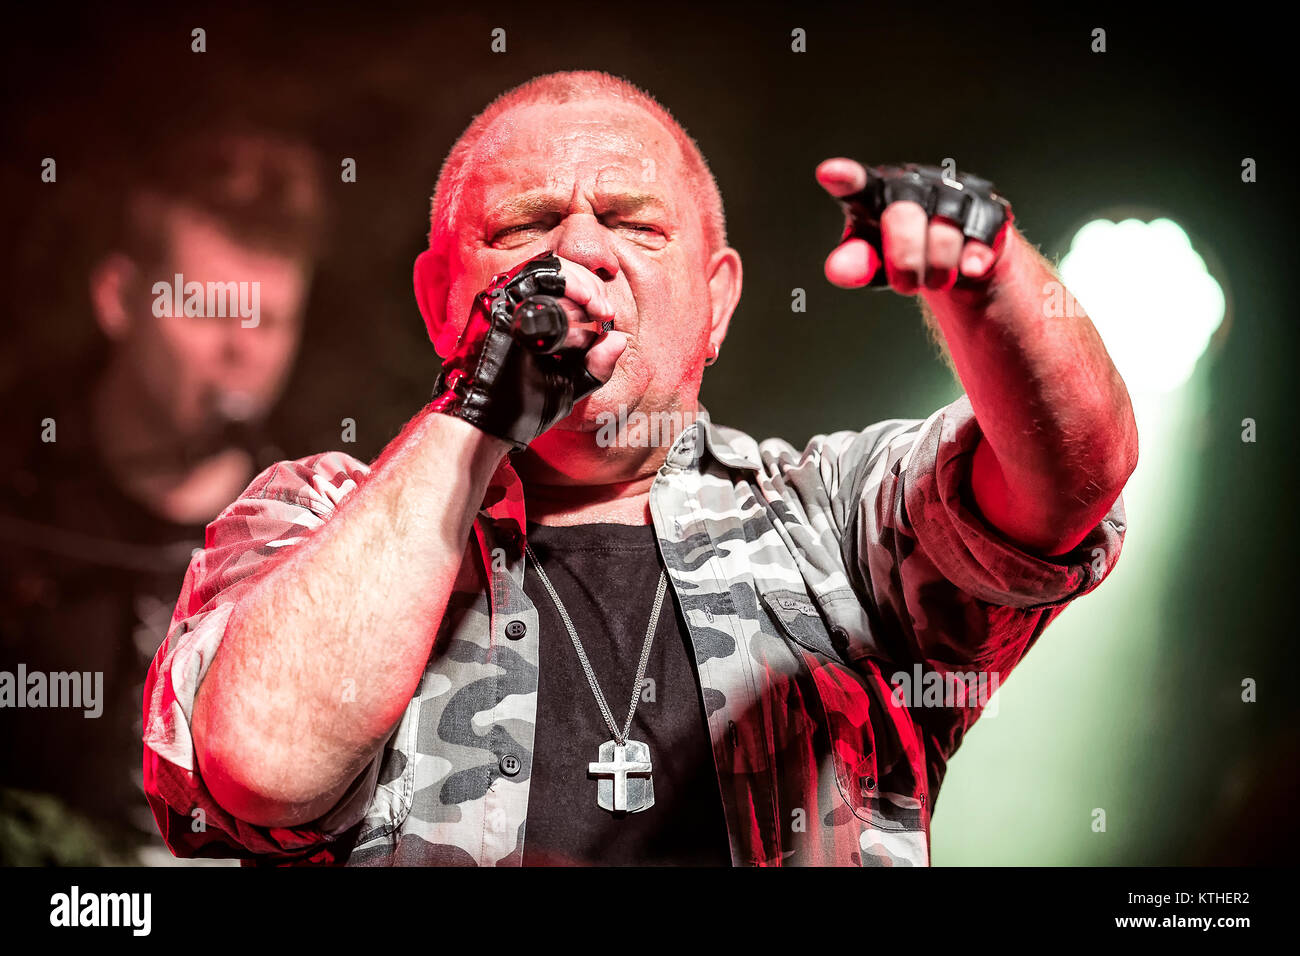 Il tedesco heavy metal band U.D.O. esegue un concerto dal vivo presso Vulkan Arena di Oslo. Qui band fondatore e cantante Udo Dirkschneider è visto dal vivo sul palco. Norvegia, 30/04 2015. Foto Stock